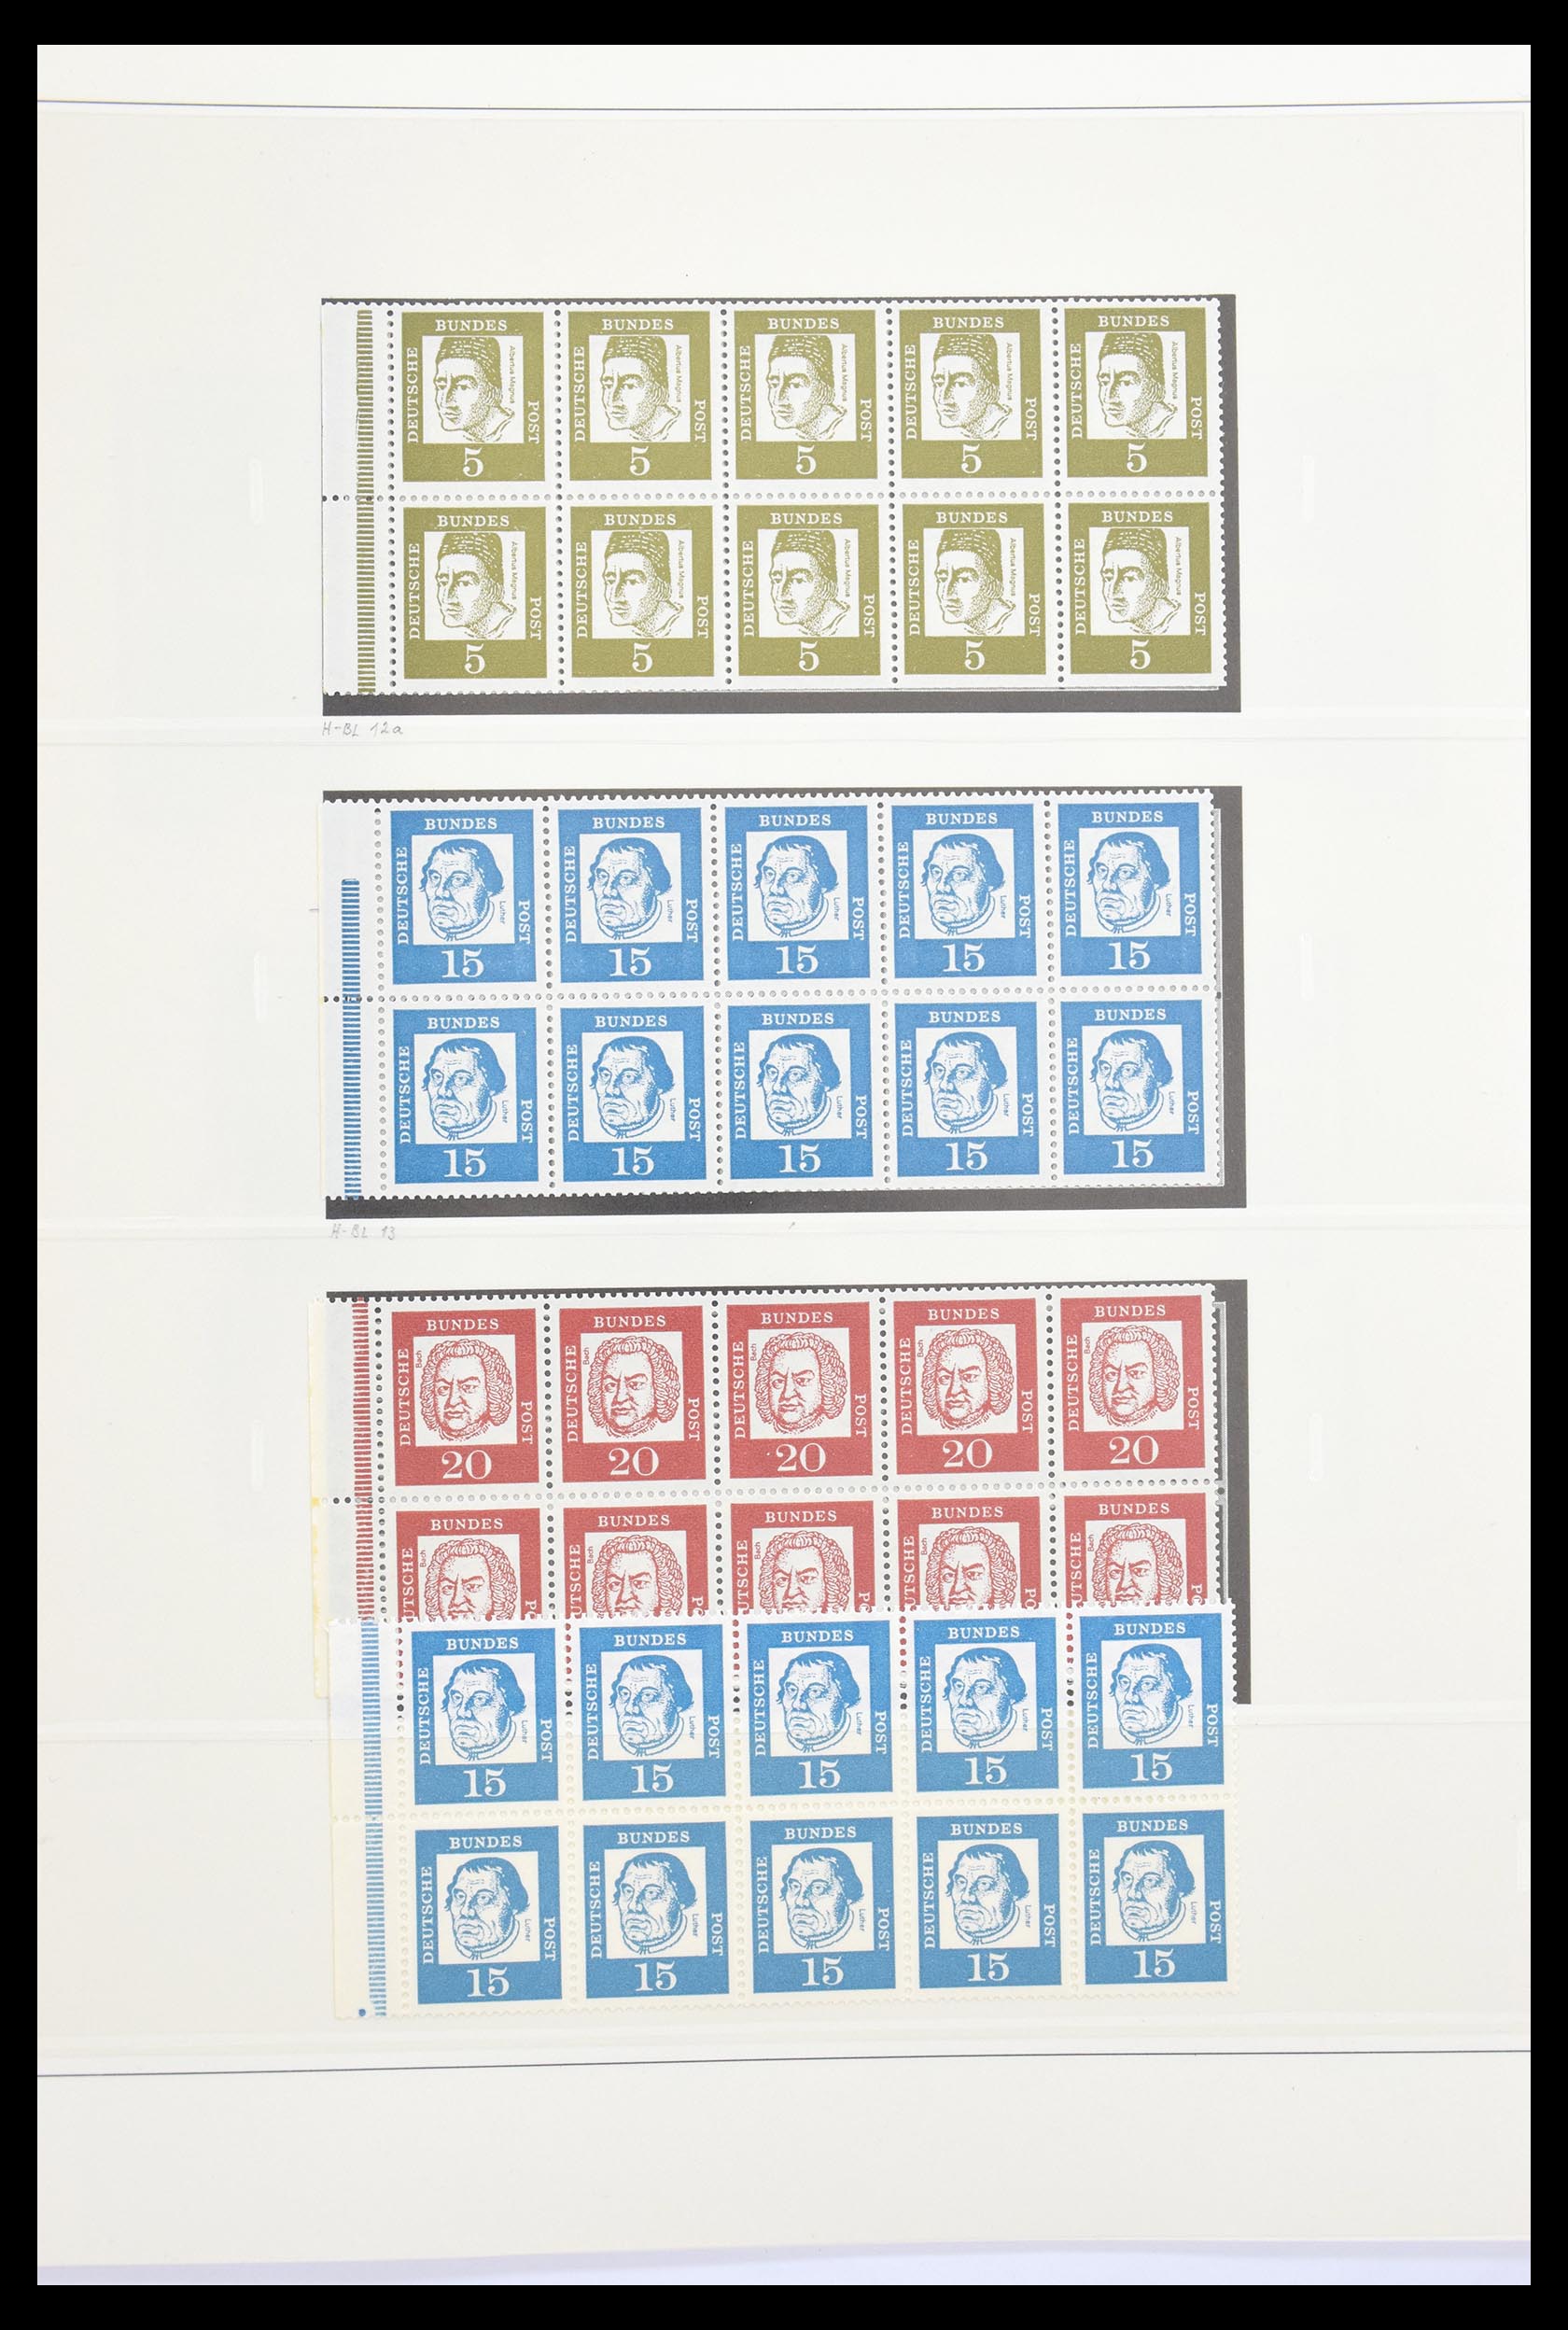 30605 019 - 30605 Bundespost combinaties 1951-1974.